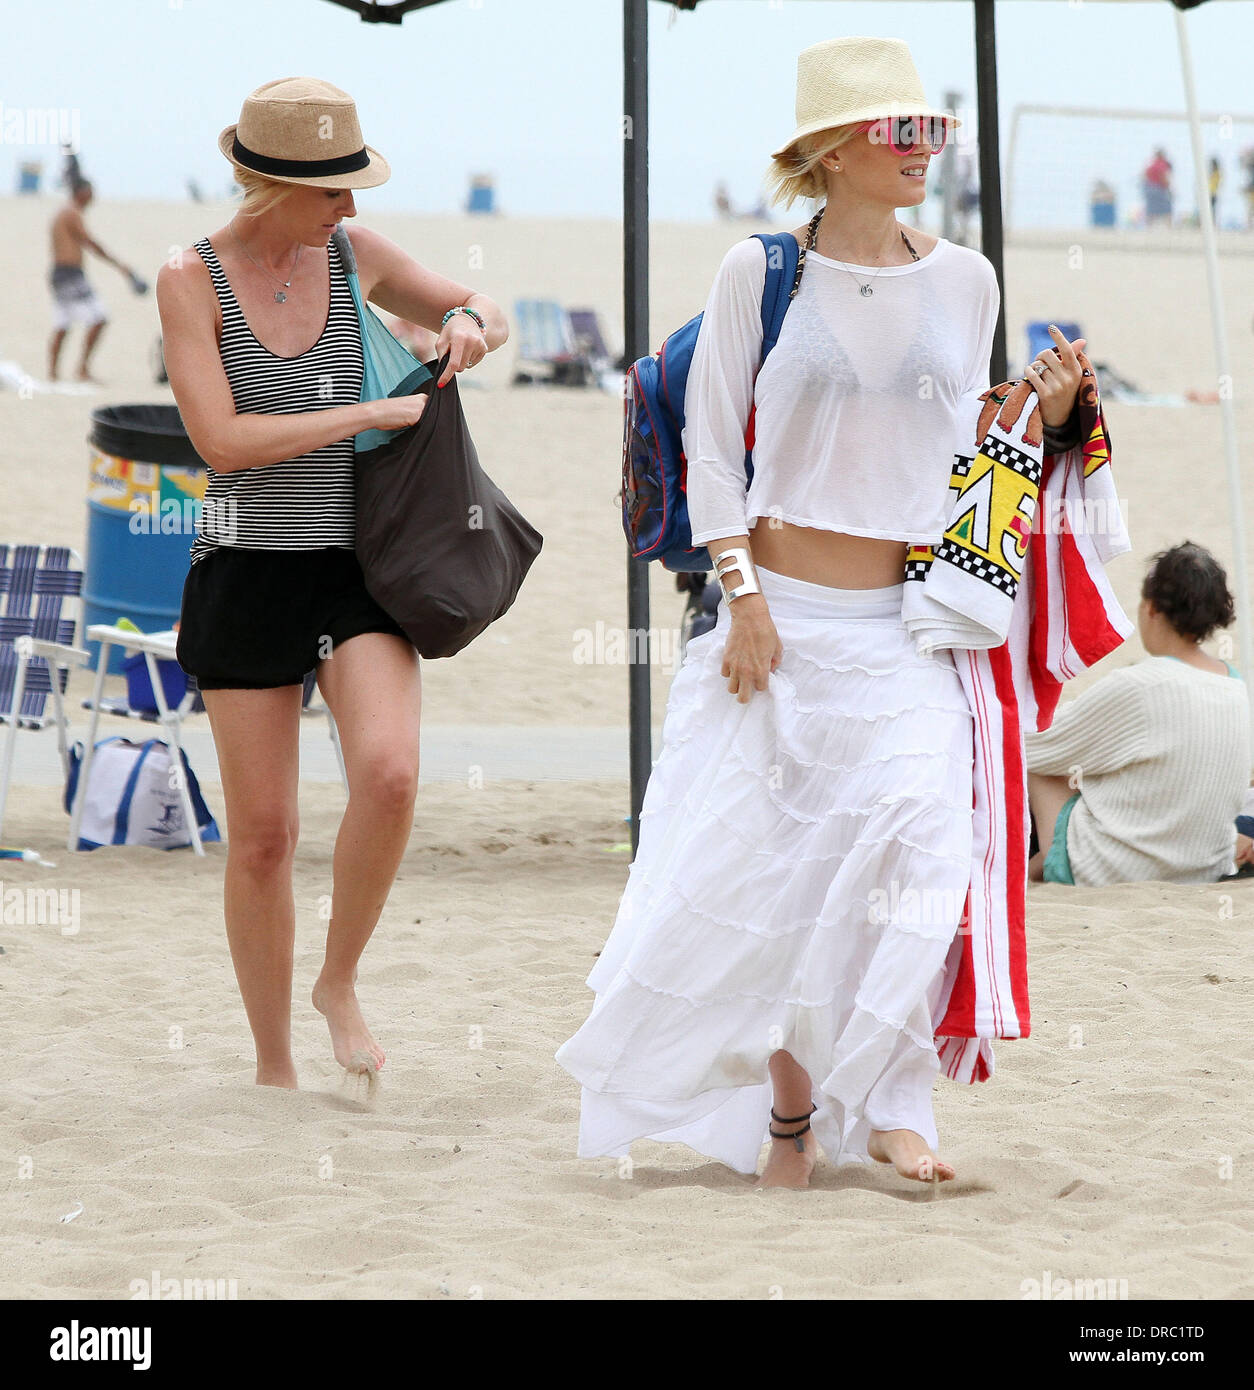 Gwen Stefani jouit de la journée sur la plage de Santa Monica avec des amis. Los Angeles, Californie - 14.07.12 Banque D'Images